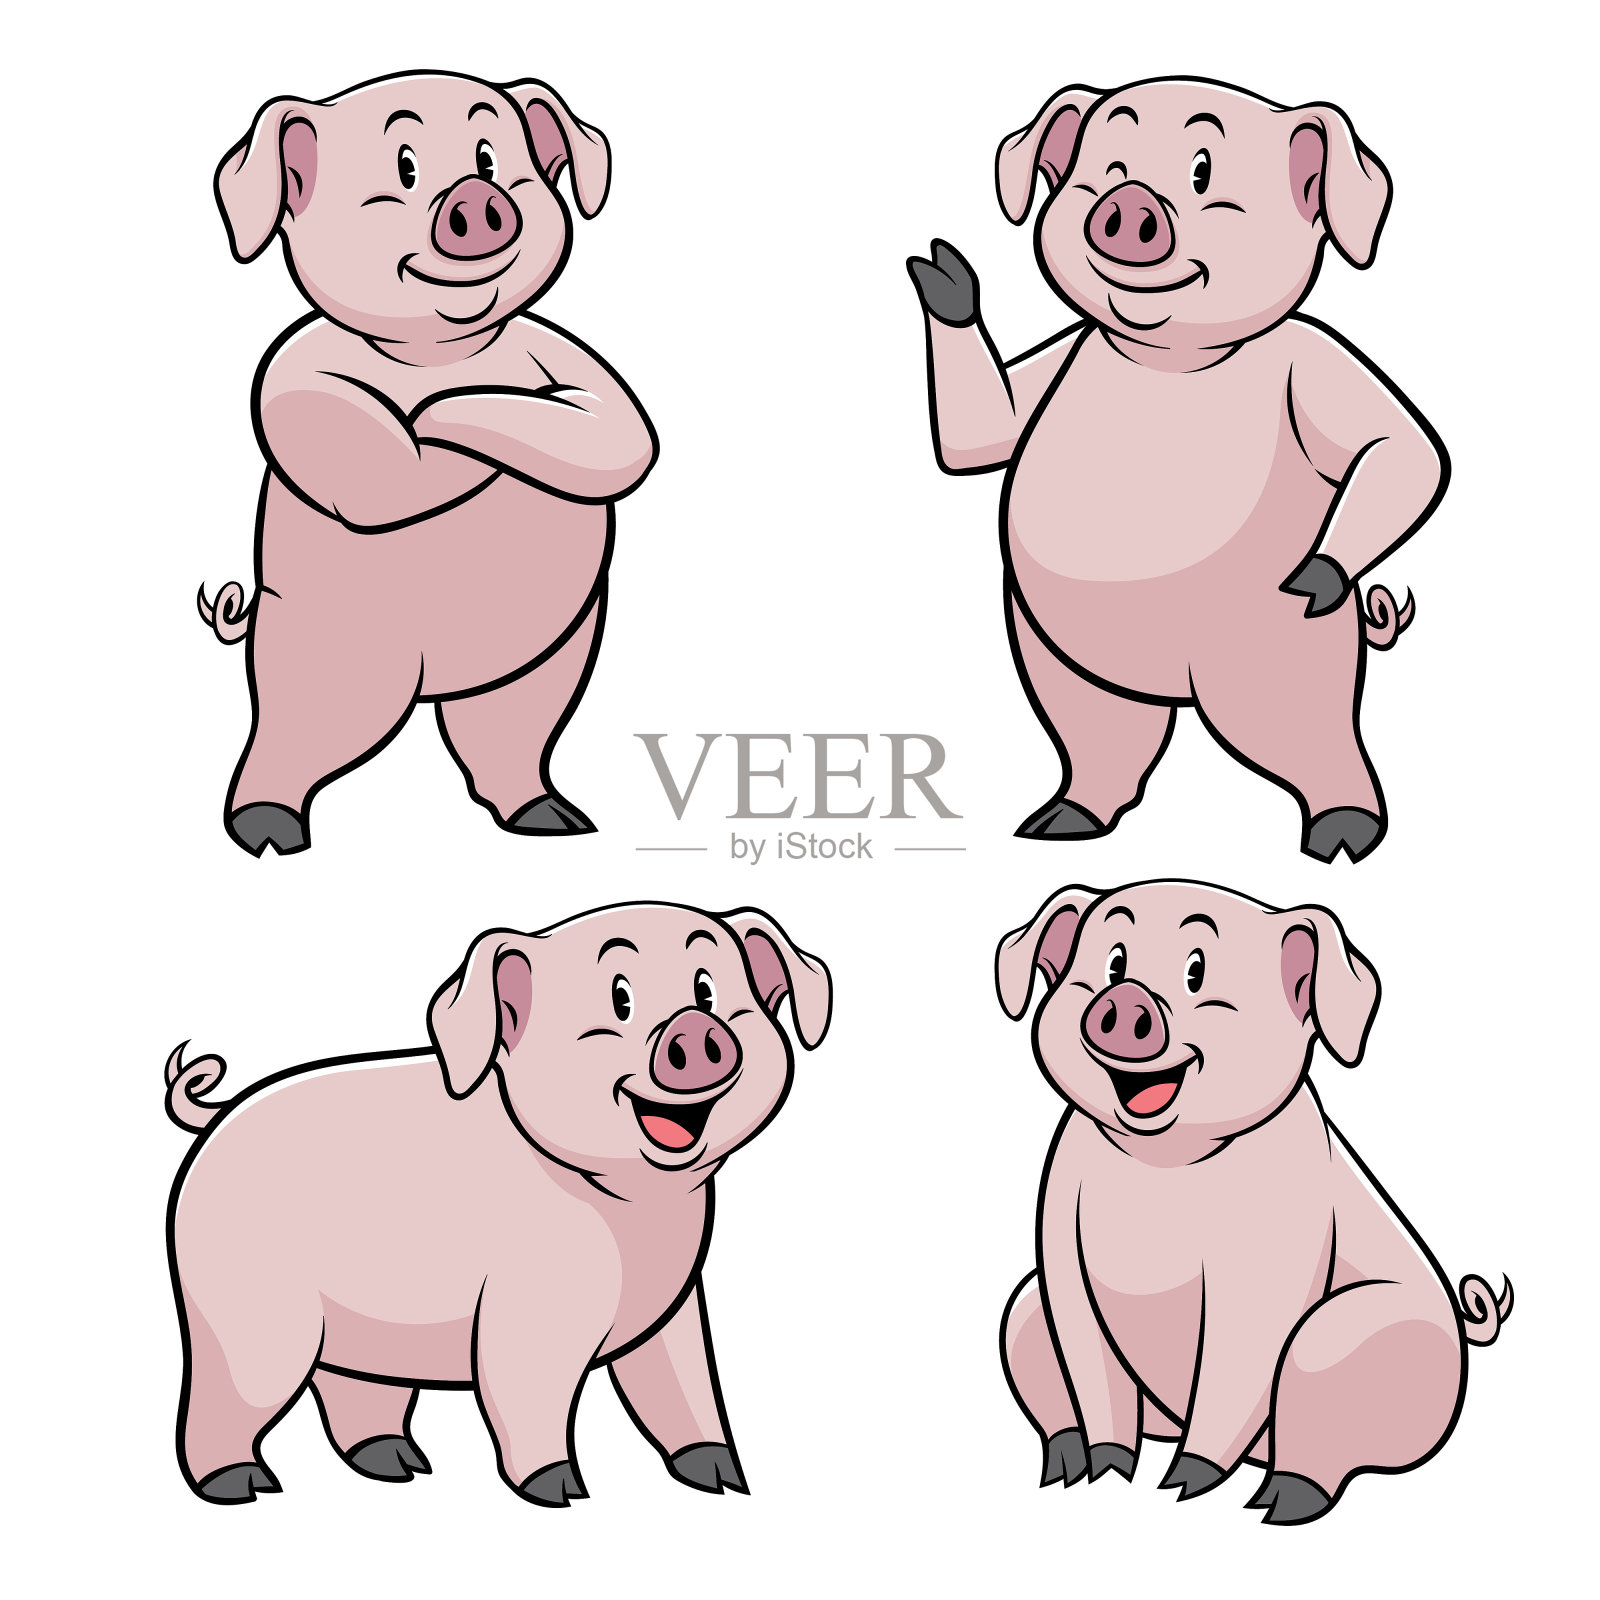 卡通风格的猪设计元素图片